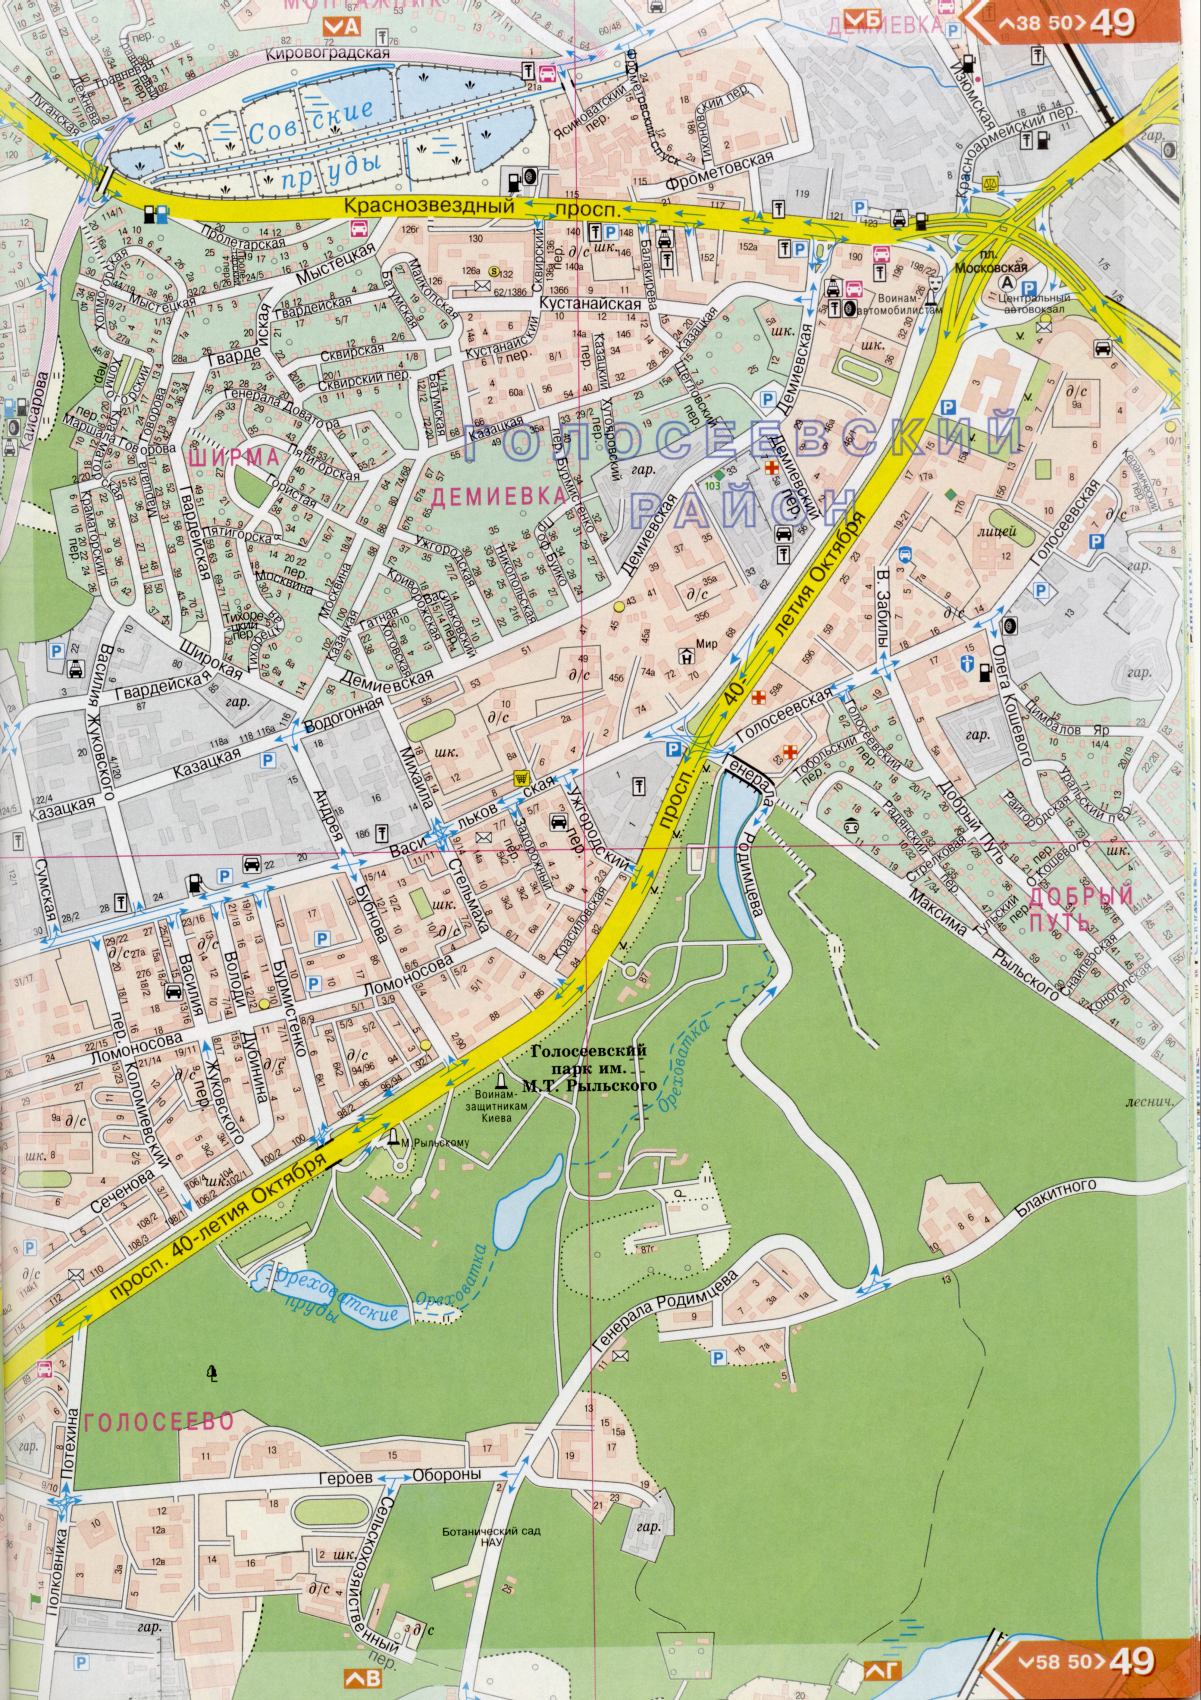 Kiev carte détails 1cm = 150m pour 45 feuilles. Carte de Kiev de l'atlas des routes. Télécharger une carte détaillée, E4